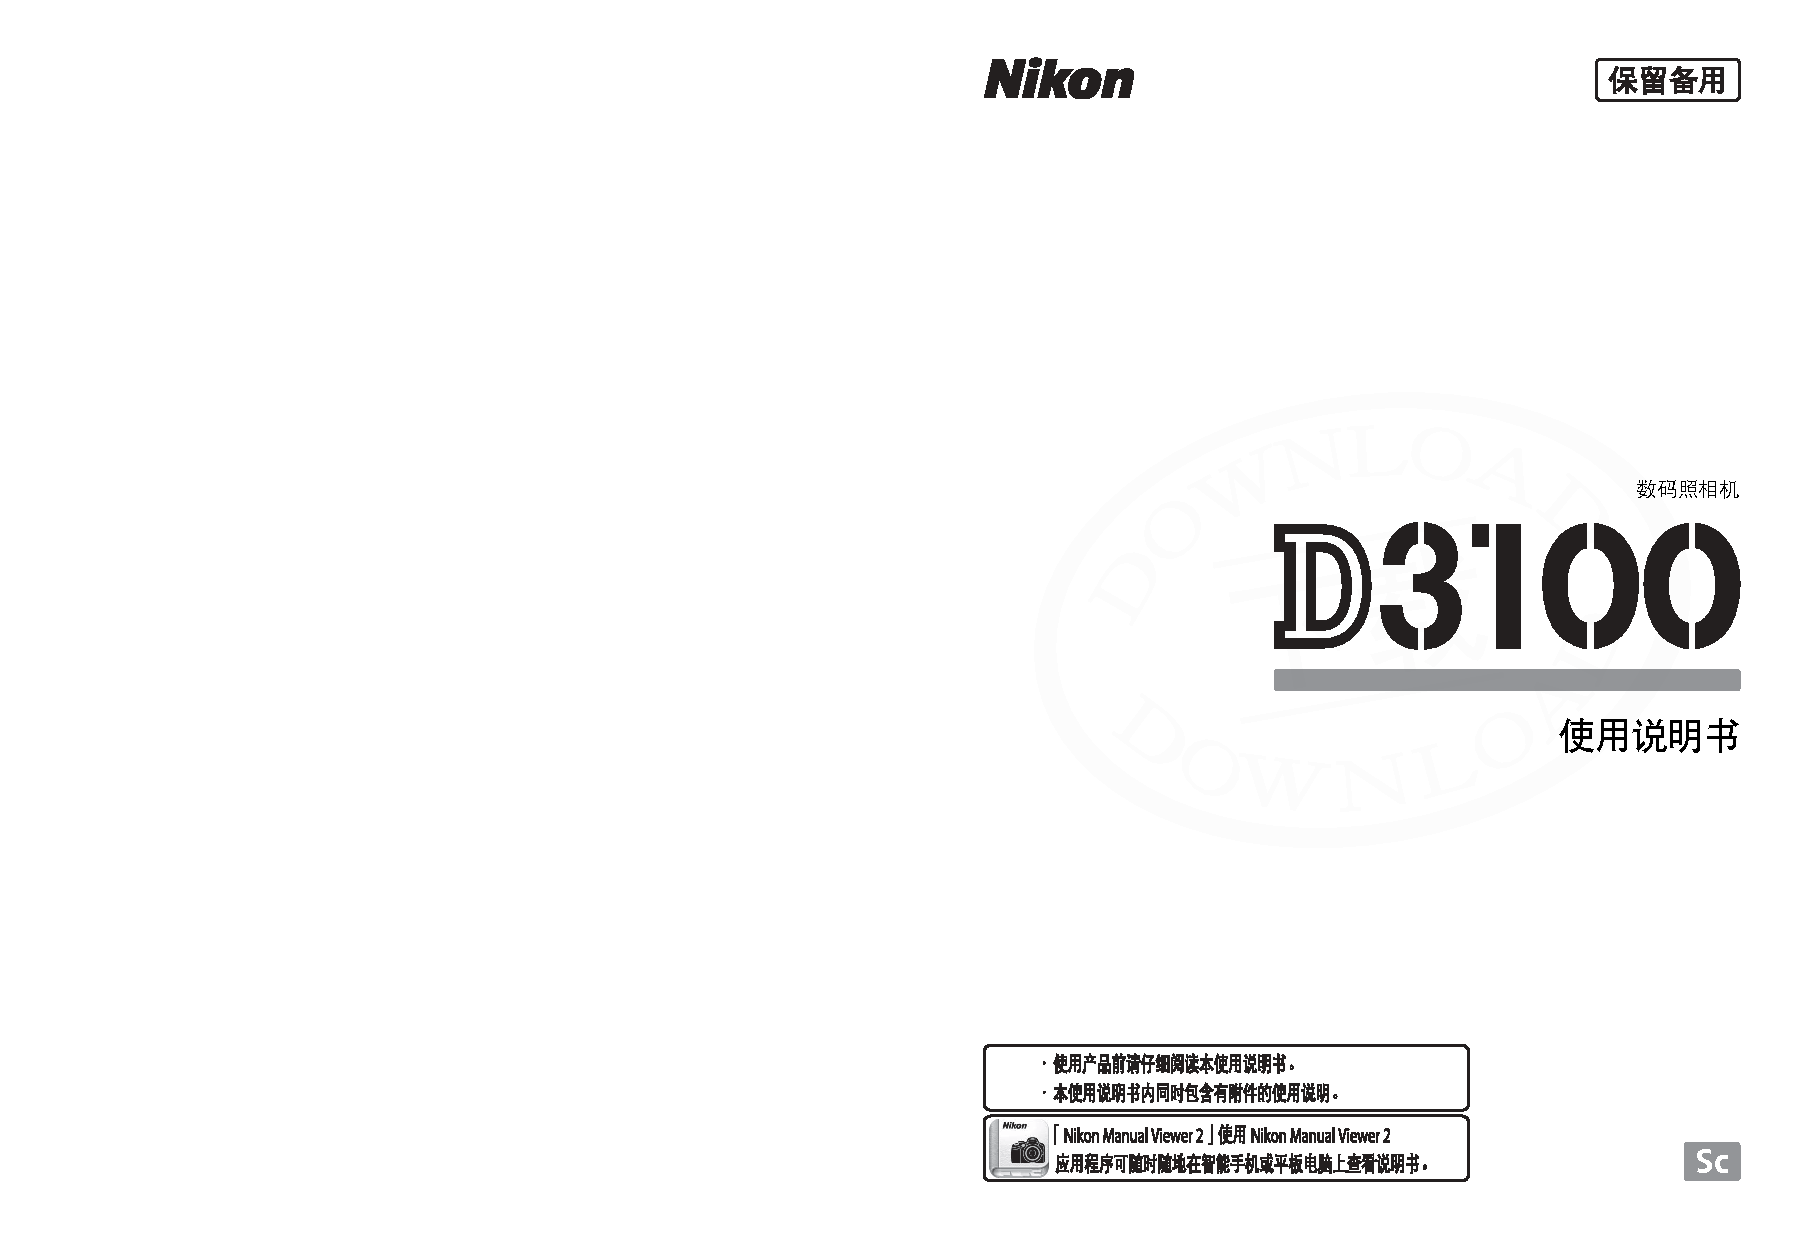 尼康 Nikon D3100 大陆版 使用说明书 封面